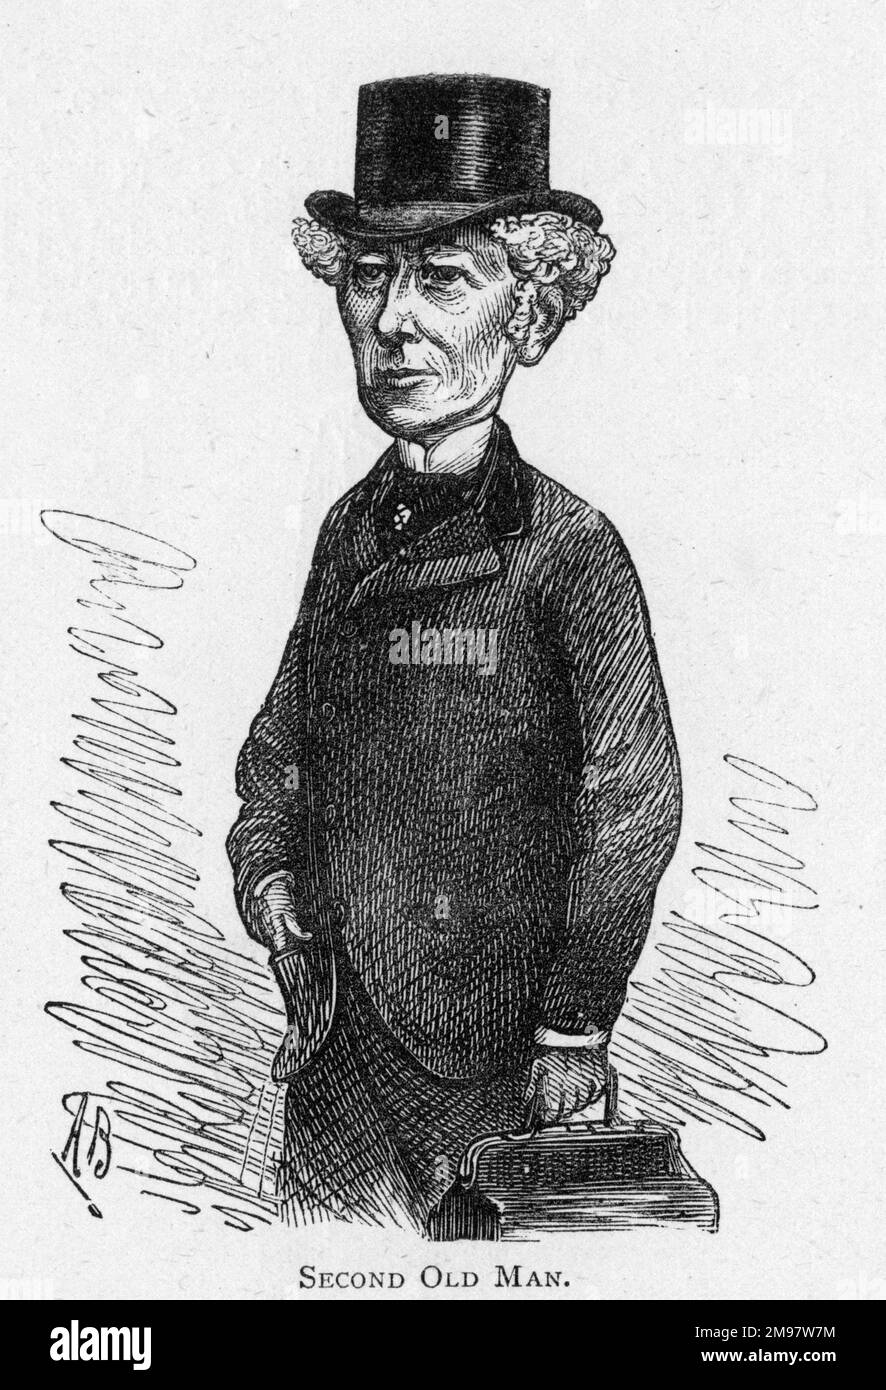 Caricatura del actor inglés William Farren (1825-1908), que no debe confundirse con su padre, un actor inglés del mismo nombre, Second Old Man. Foto de stock